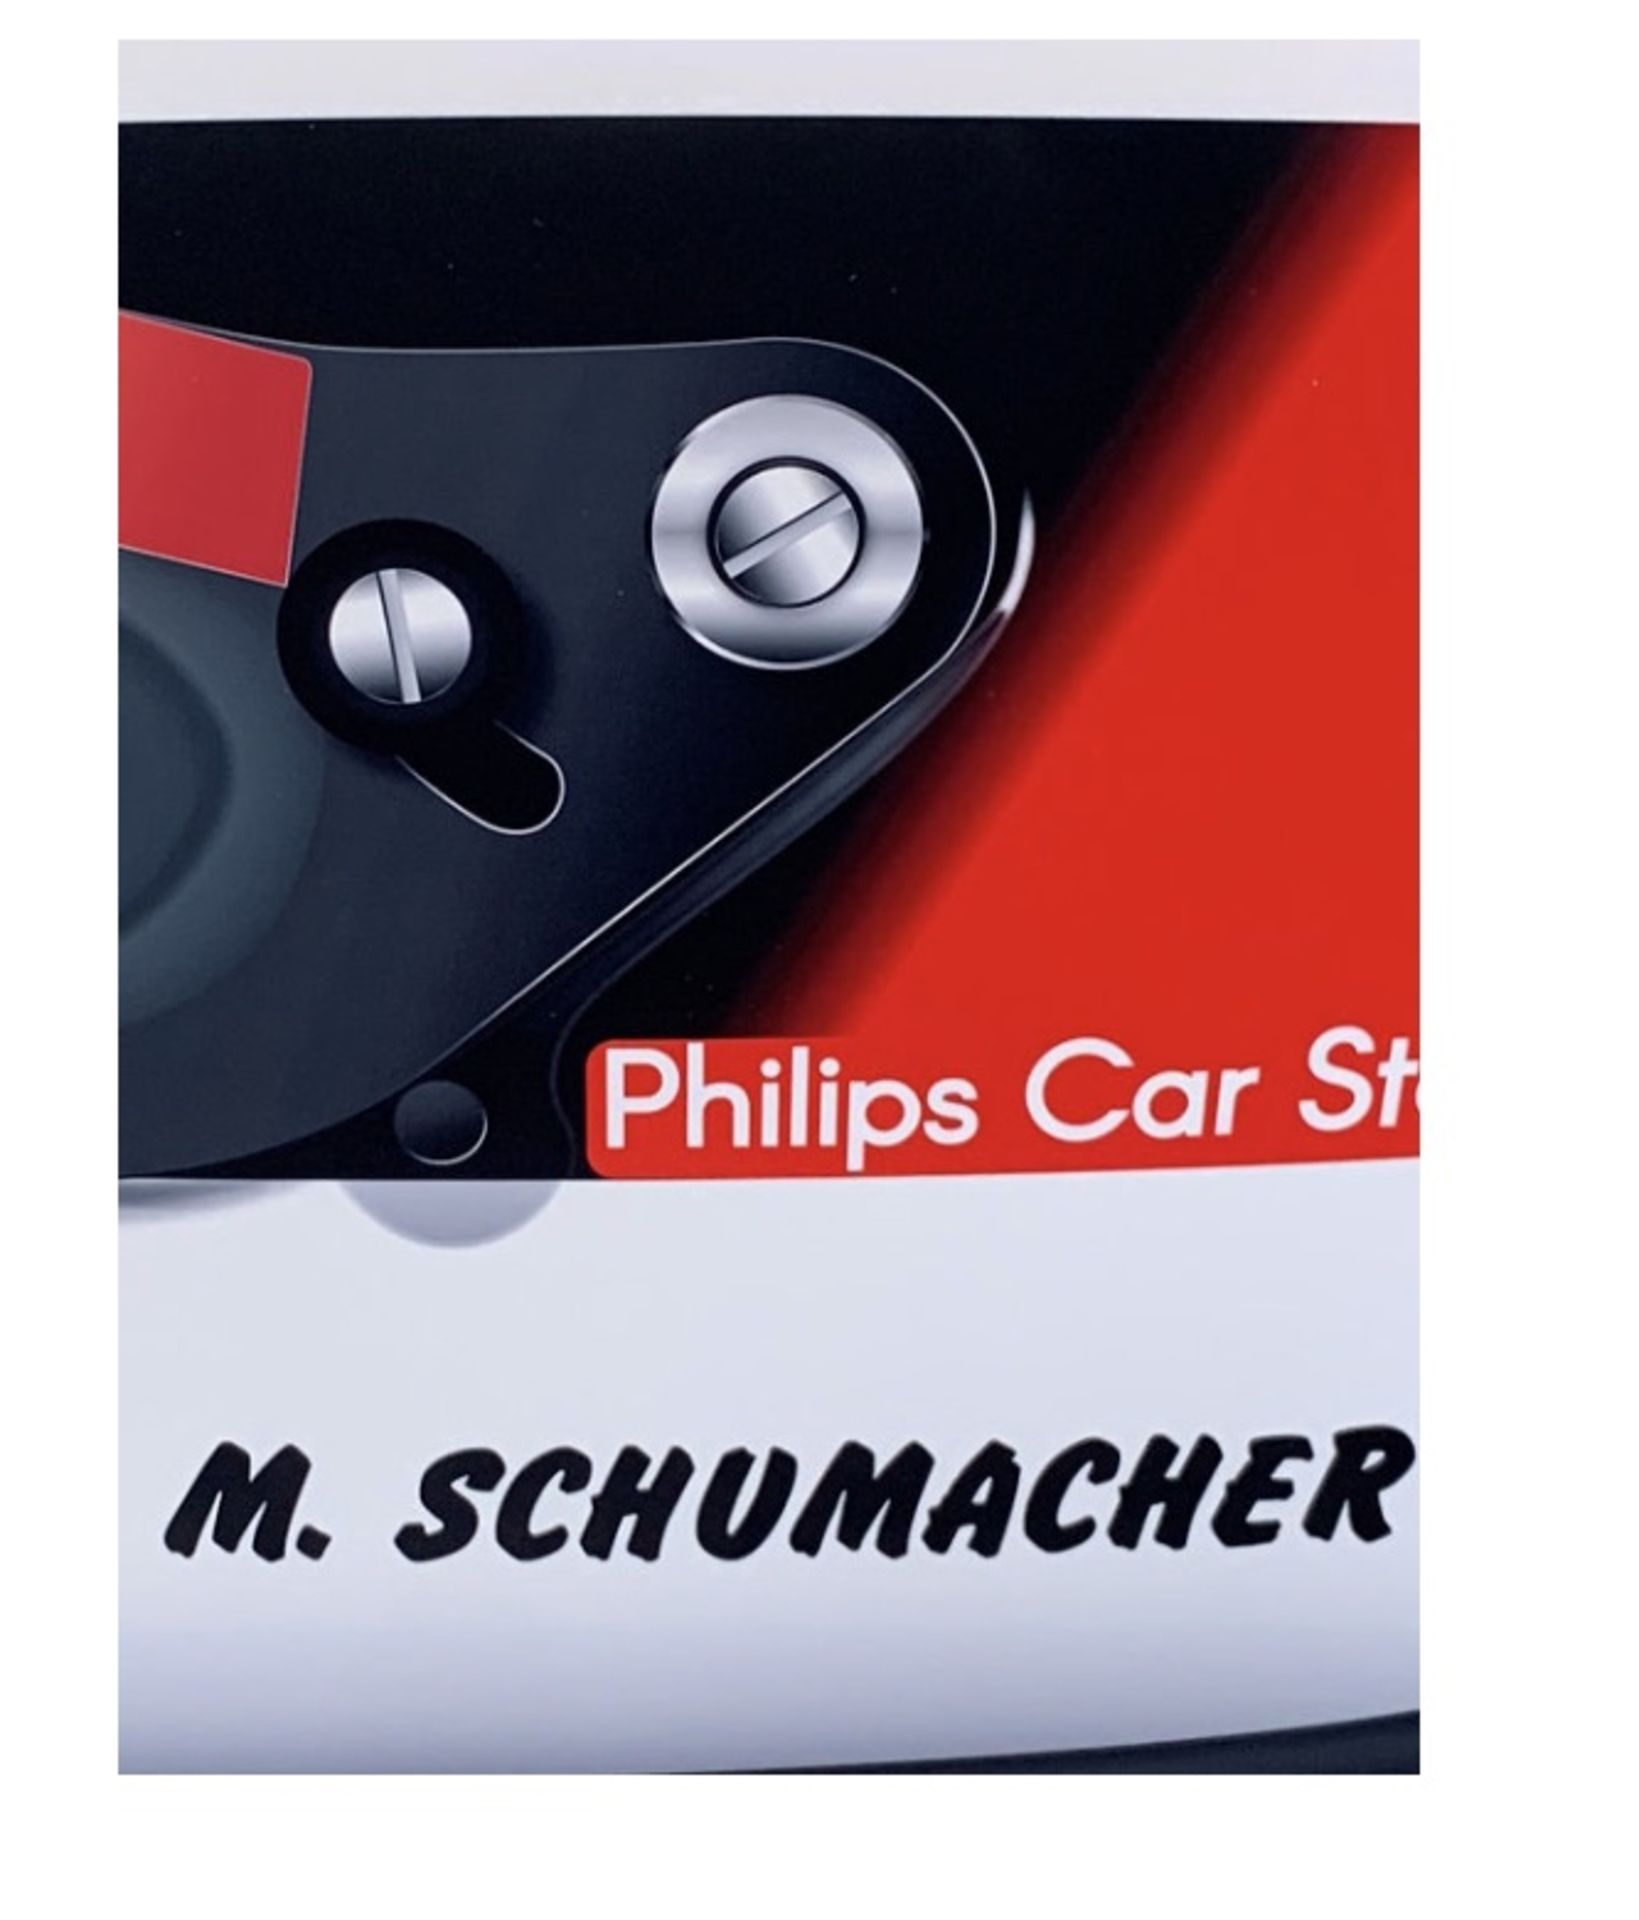 Michael Schumacher 1991 F1 Helmet Aluminum Garage Wall Display - Image 5 of 6